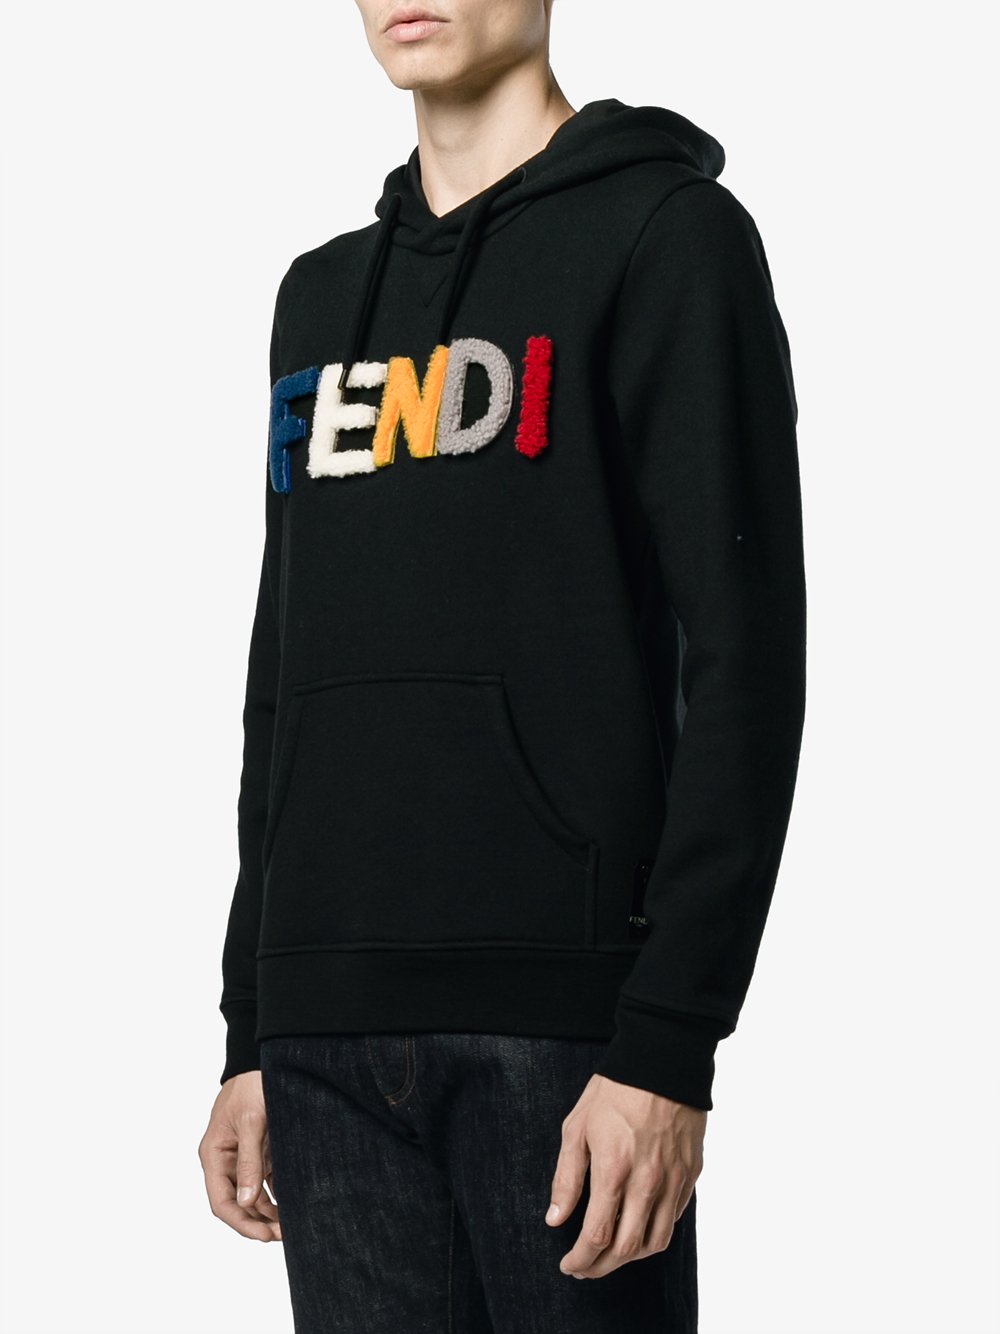 Fendi Wool Logo Hoodie in Black for Men - Lyst